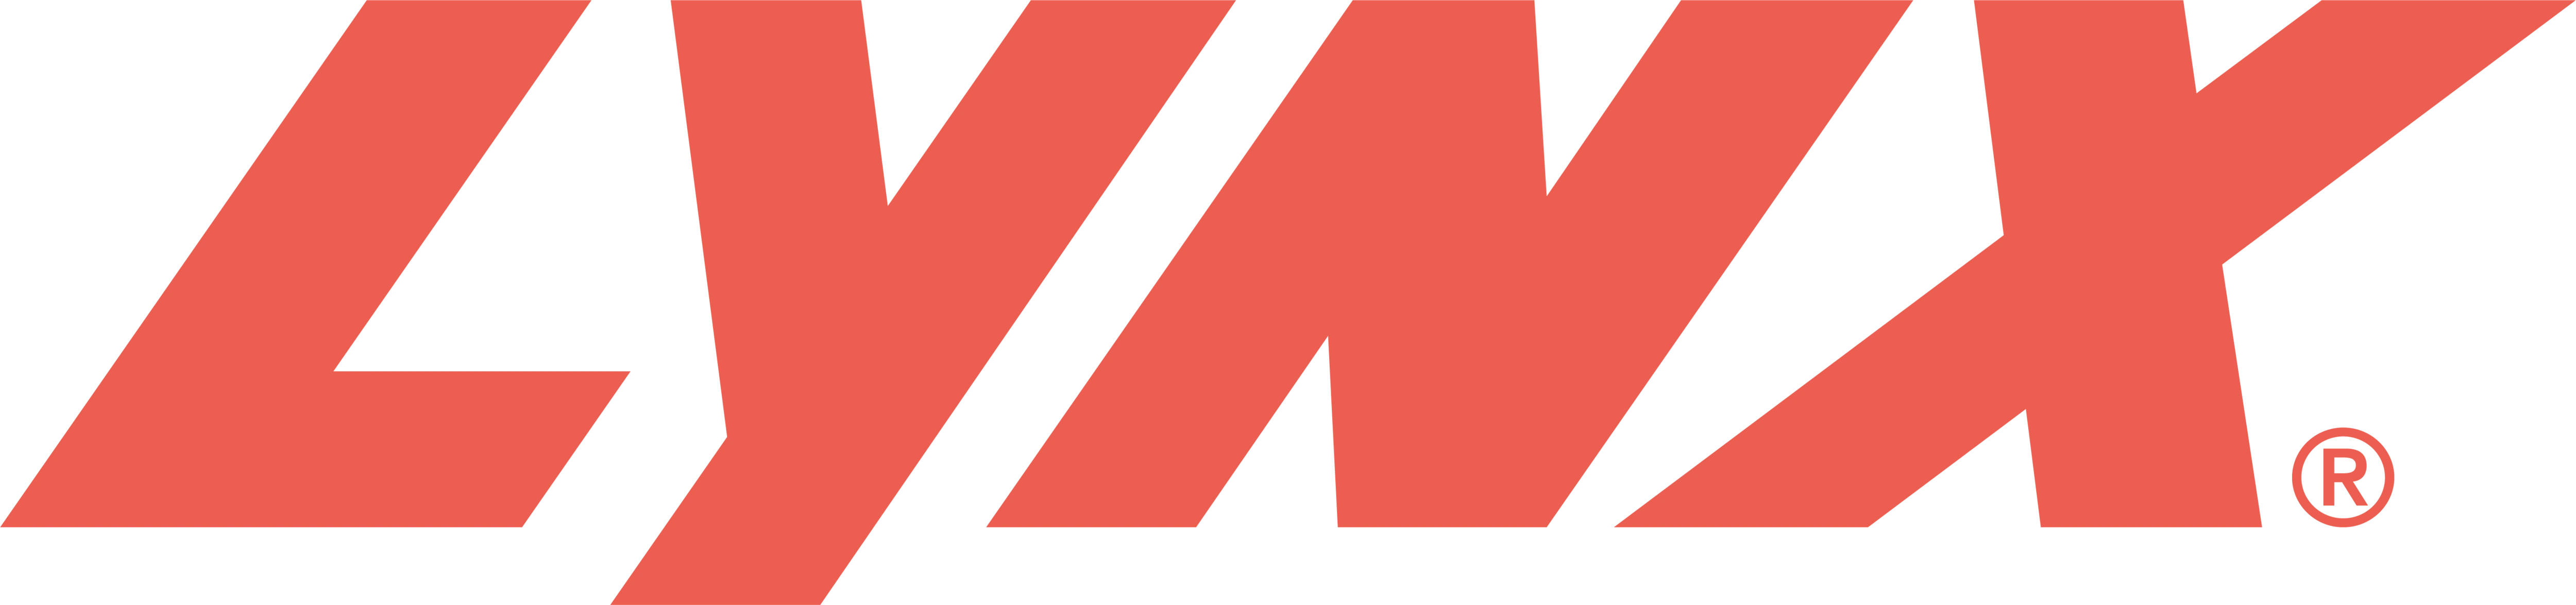 lynx_logo_red